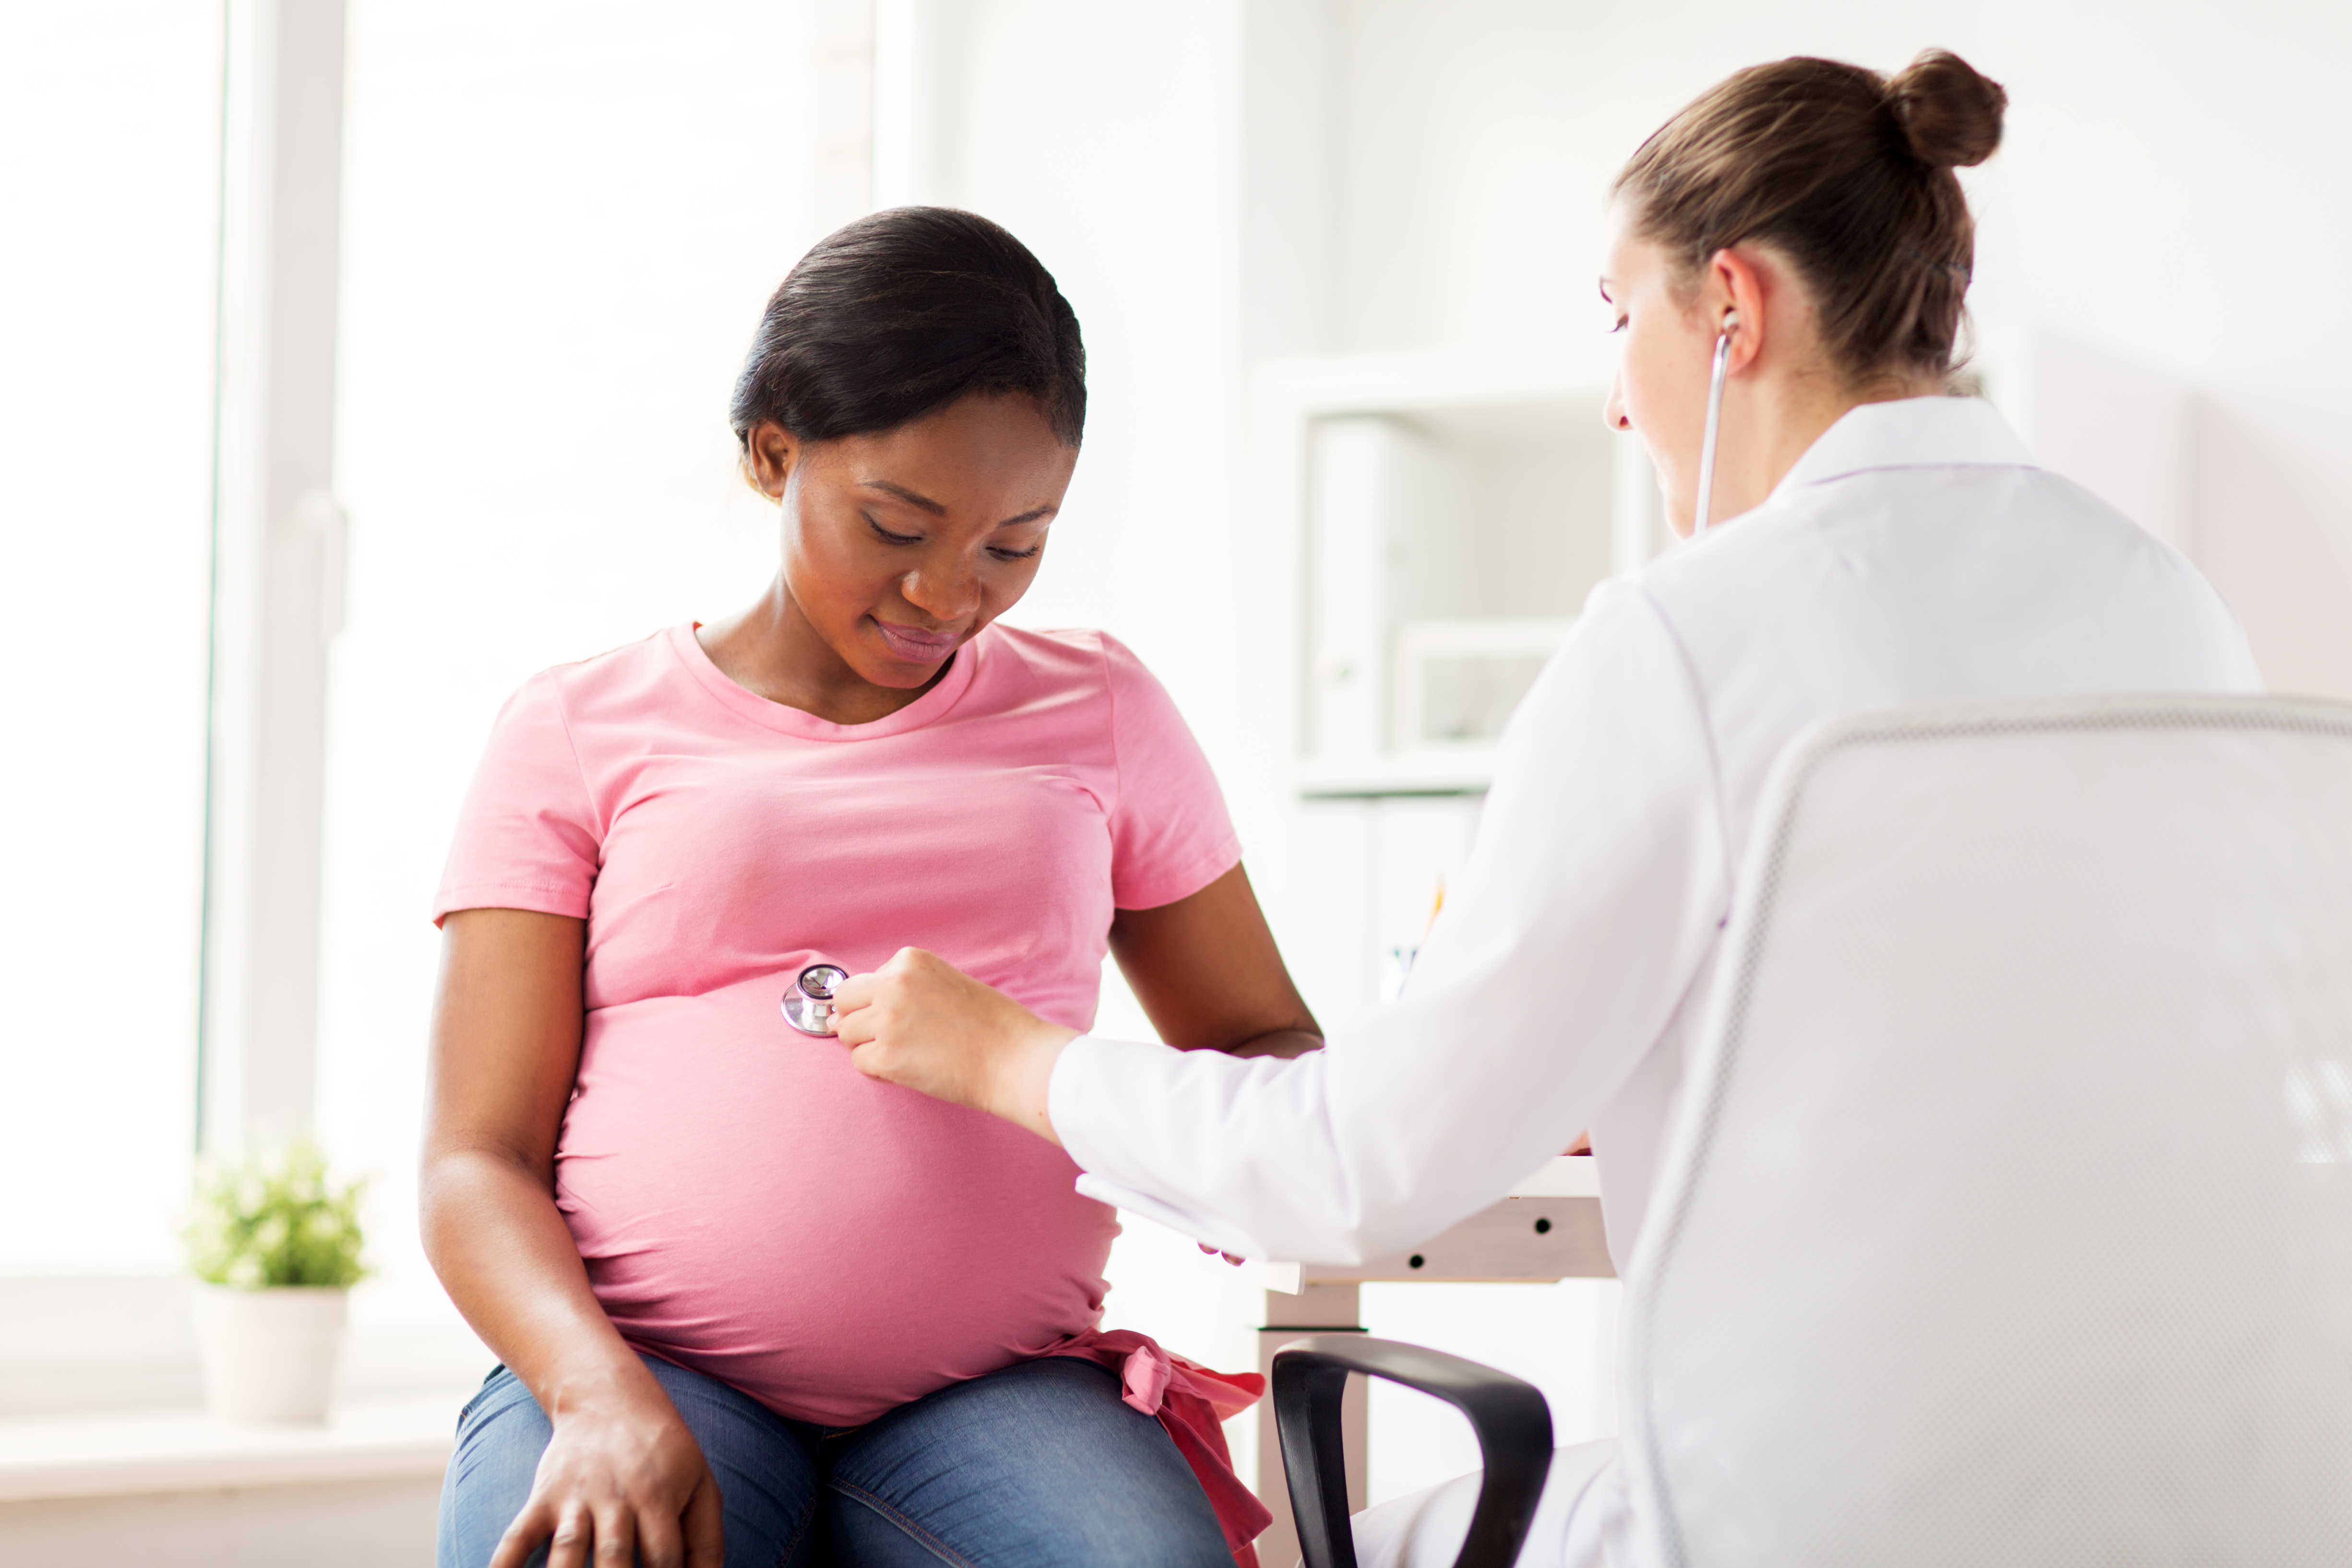 A imagem mostra uma mulher grávida sendo avaliada por uma médica.